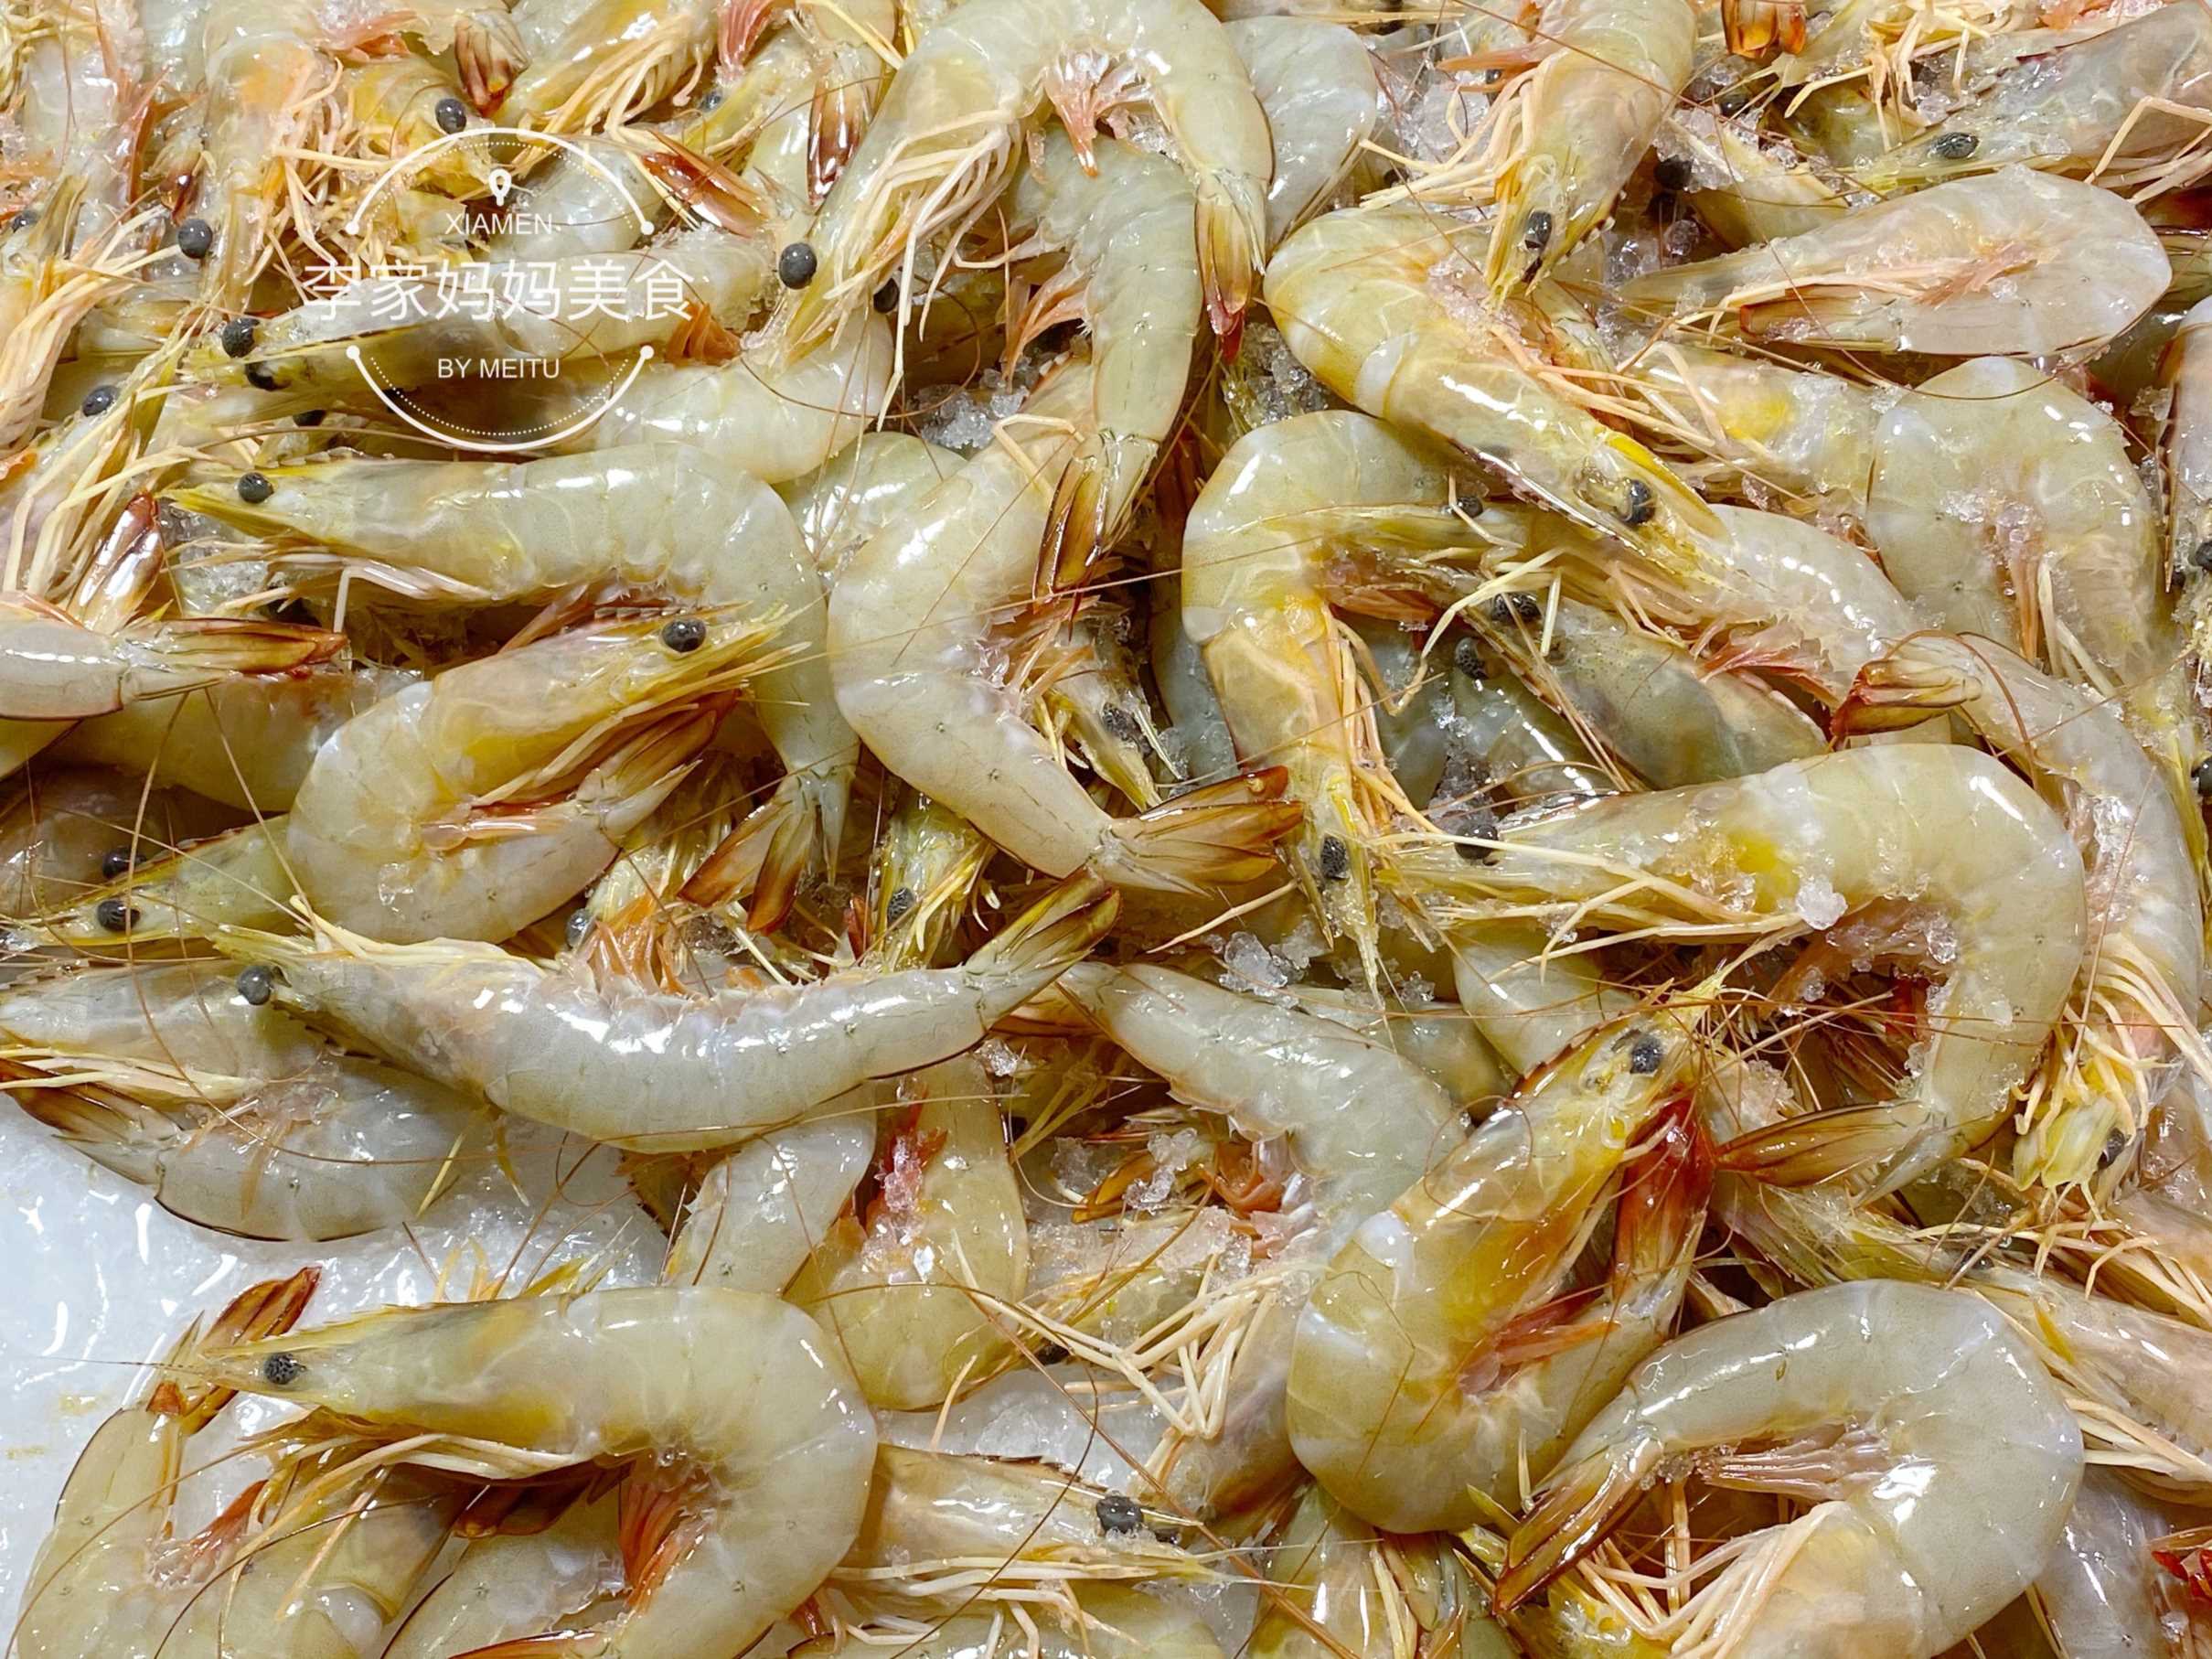 市场上常见的虾类海鲜有哪些